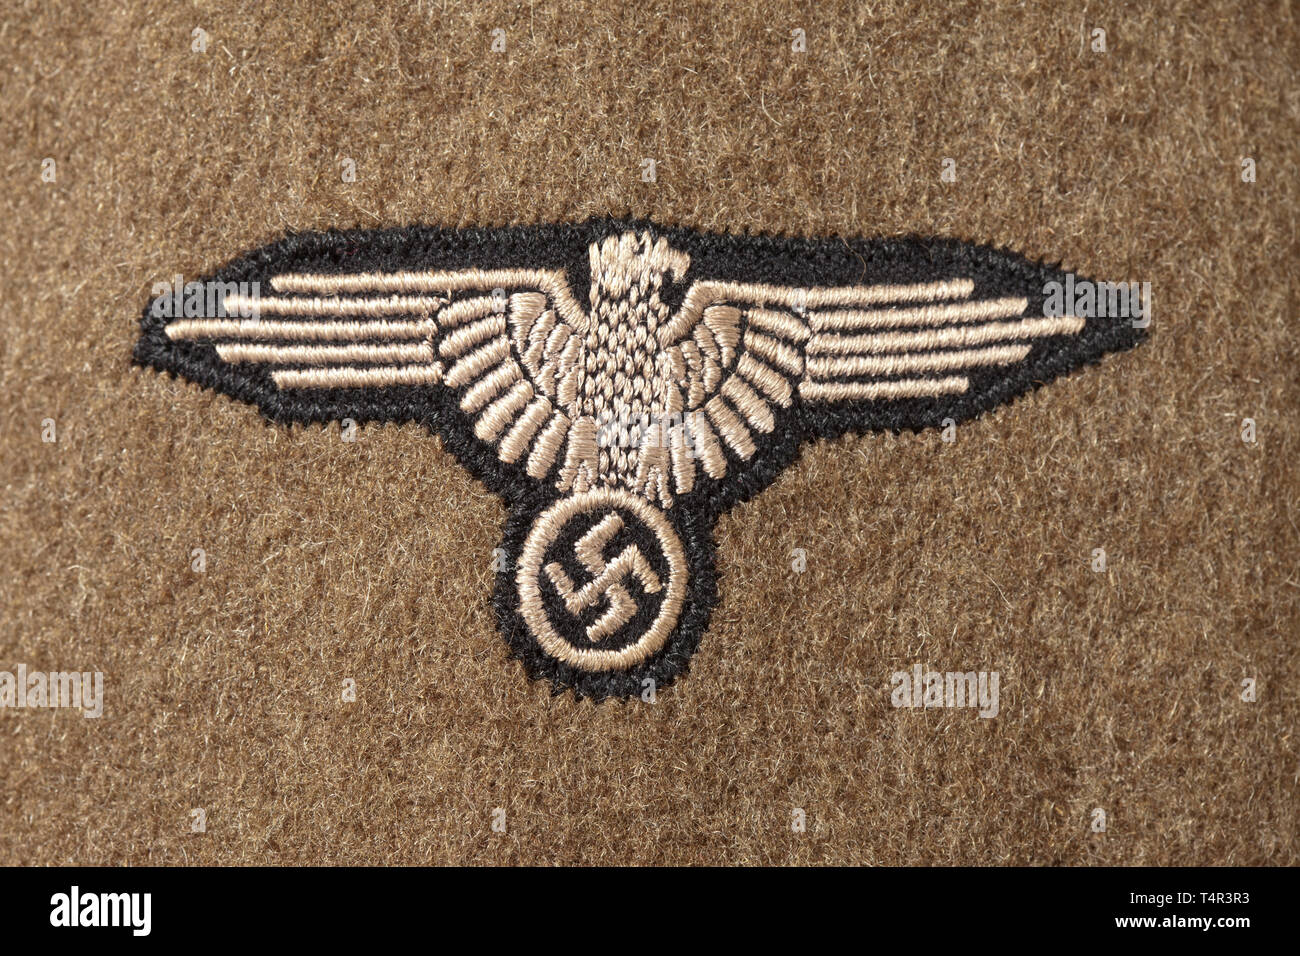 Ein Feld Tunika M44 mit angenähten Hülse eagle sehr spät, braun Wollstoff, Khaki-farbenen Innenauskleidung, dem linken Ärmel mit einem Angenähten Hülse Eagle (RZM-Problem, Maschine - bestickt auf schwarzem Sockel). Einem sehr späten Feld Tunika der Waffen-SS im unberührten Zustand. historischen, historische, 20. Jahrhundert, 1930S, 1940s, Waffen-SS, bewaffneten Division der SS, bewaffneten Service, Streitkräfte, NS, Nationalsozialismus, Nationalsozialismus, Drittes Reich, Deutsche Reich, Deutschland, Militär, Militaria, Utensilien, Ausrüstung, Geräte, Objekt, Objekte, Stills, Clipping, Clippings, Schneiden, schneiden, schneiden, Editorial-Use - Nur Stockfoto